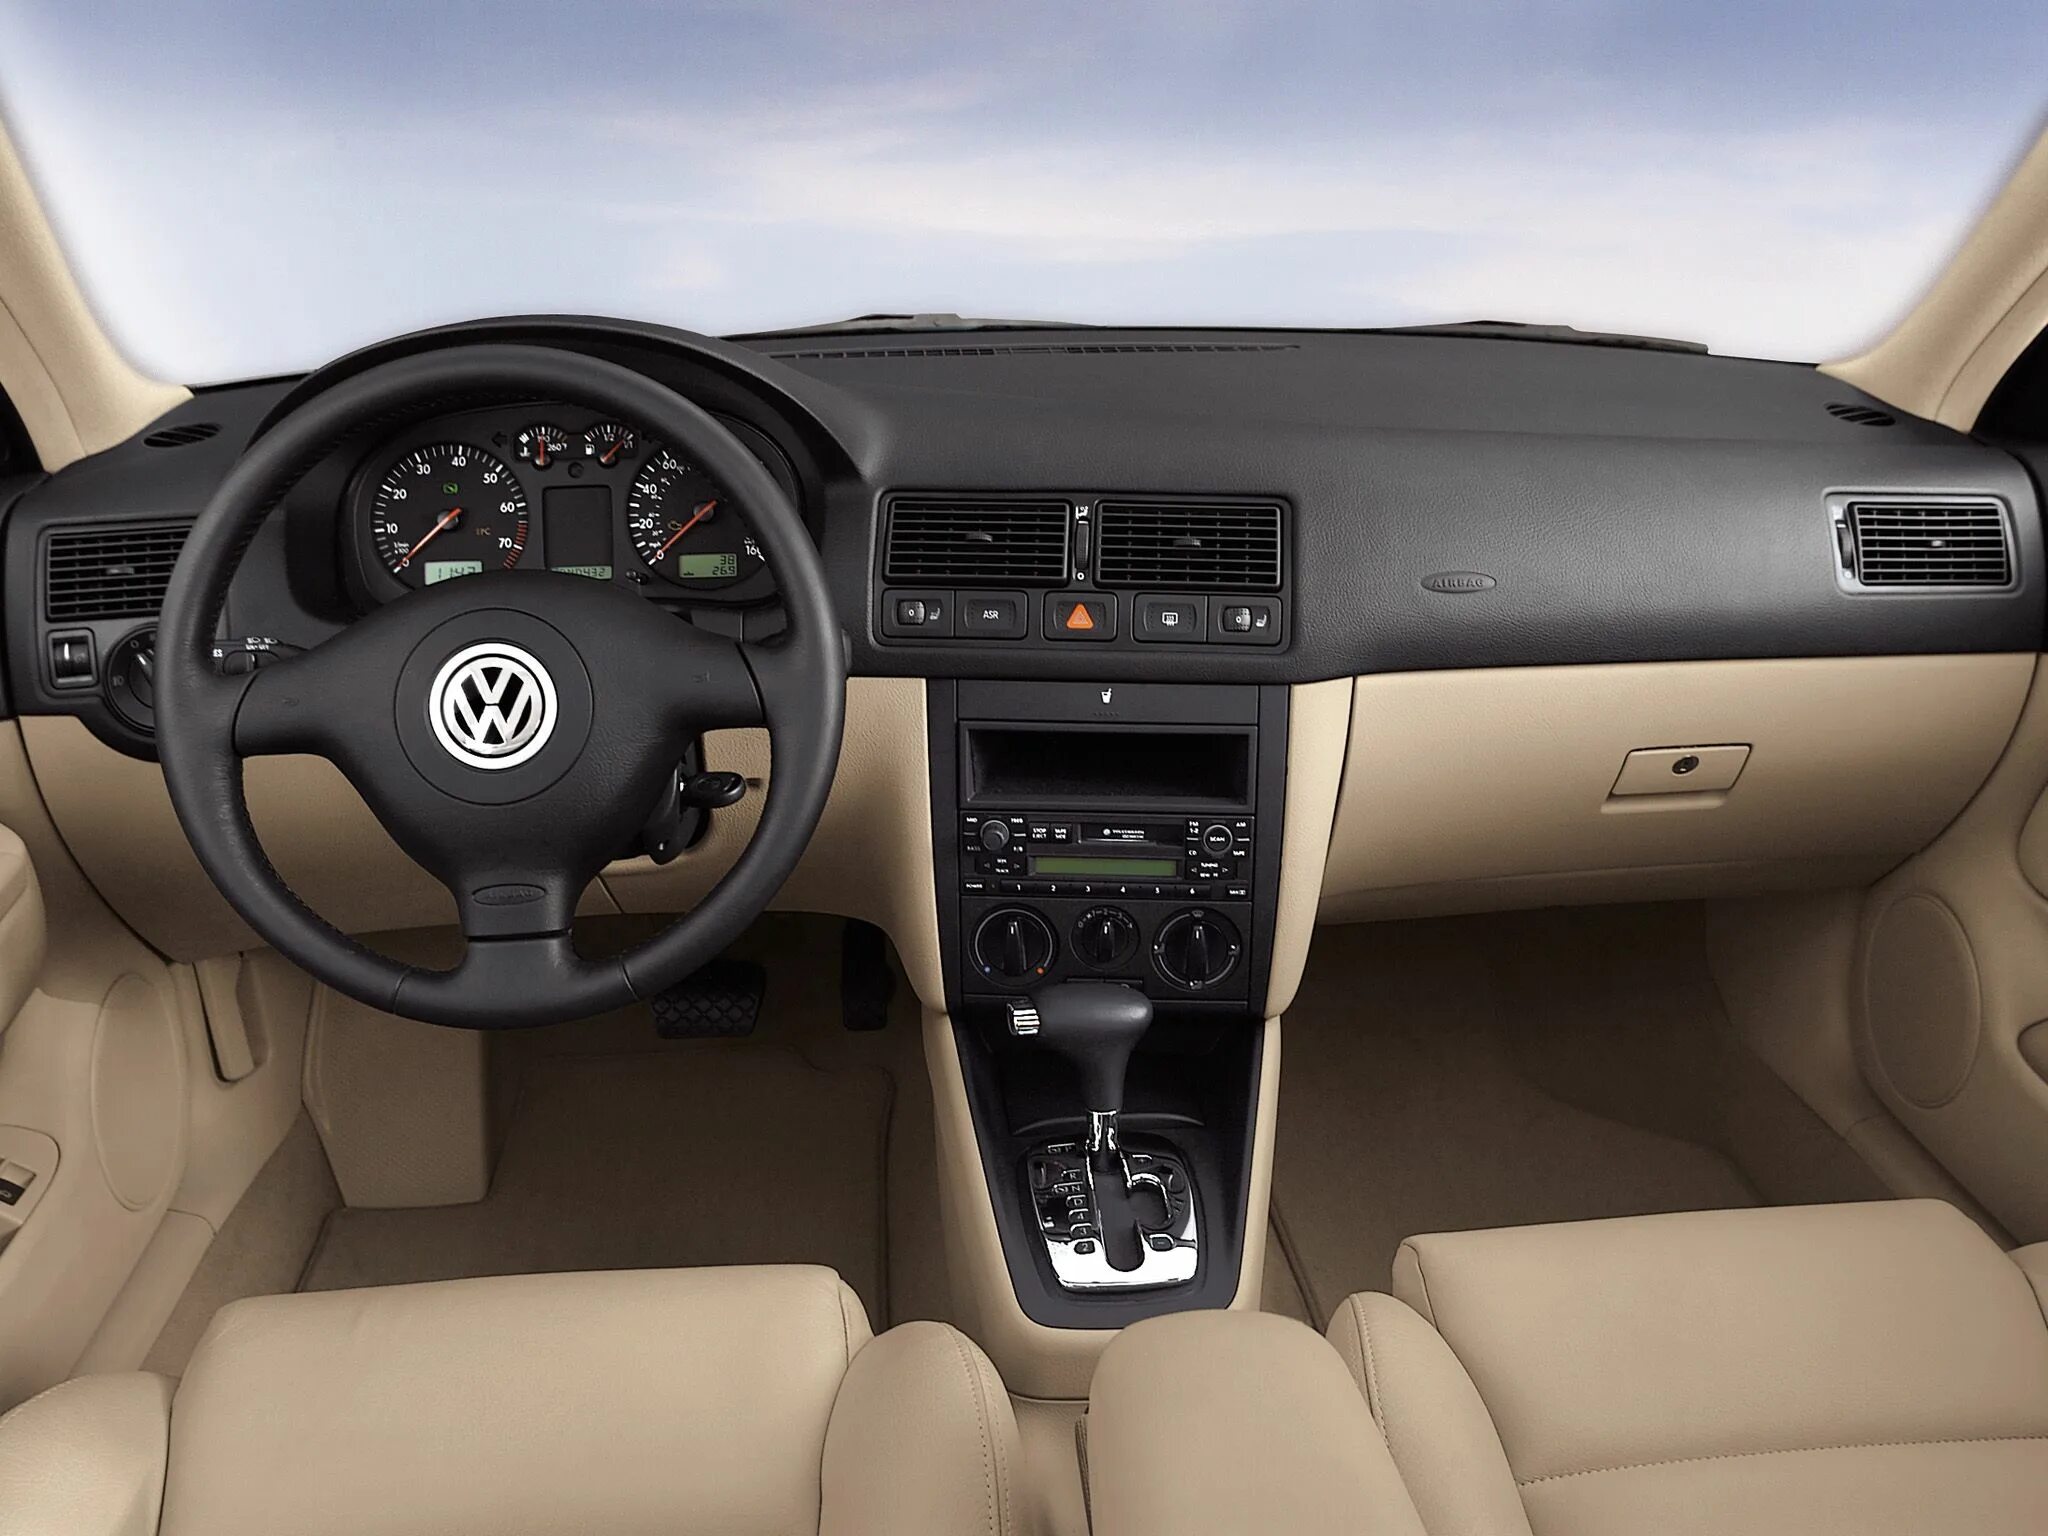 Volkswagen Golf 4 салон. Фольксваген Golf 4. Volkswagen Golf GTI 2001. Volkswagen гольф 4 салон.